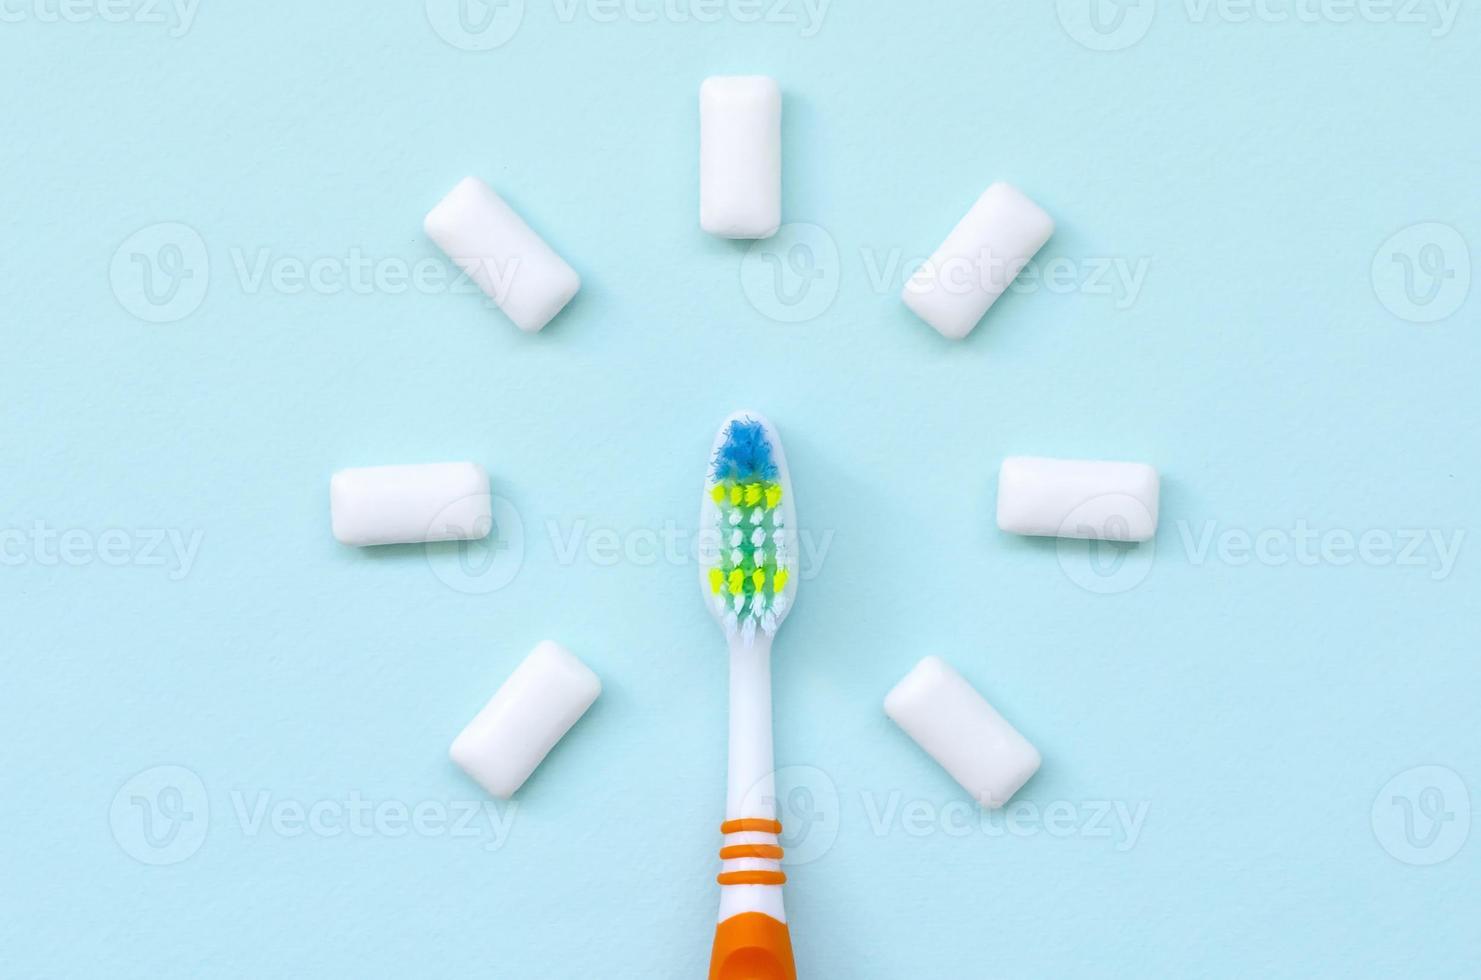 el cepillo de dientes y las gomas de mascar se encuentran sobre un fondo azul pastel. vista superior, endecha plana. concepto mínimo foto